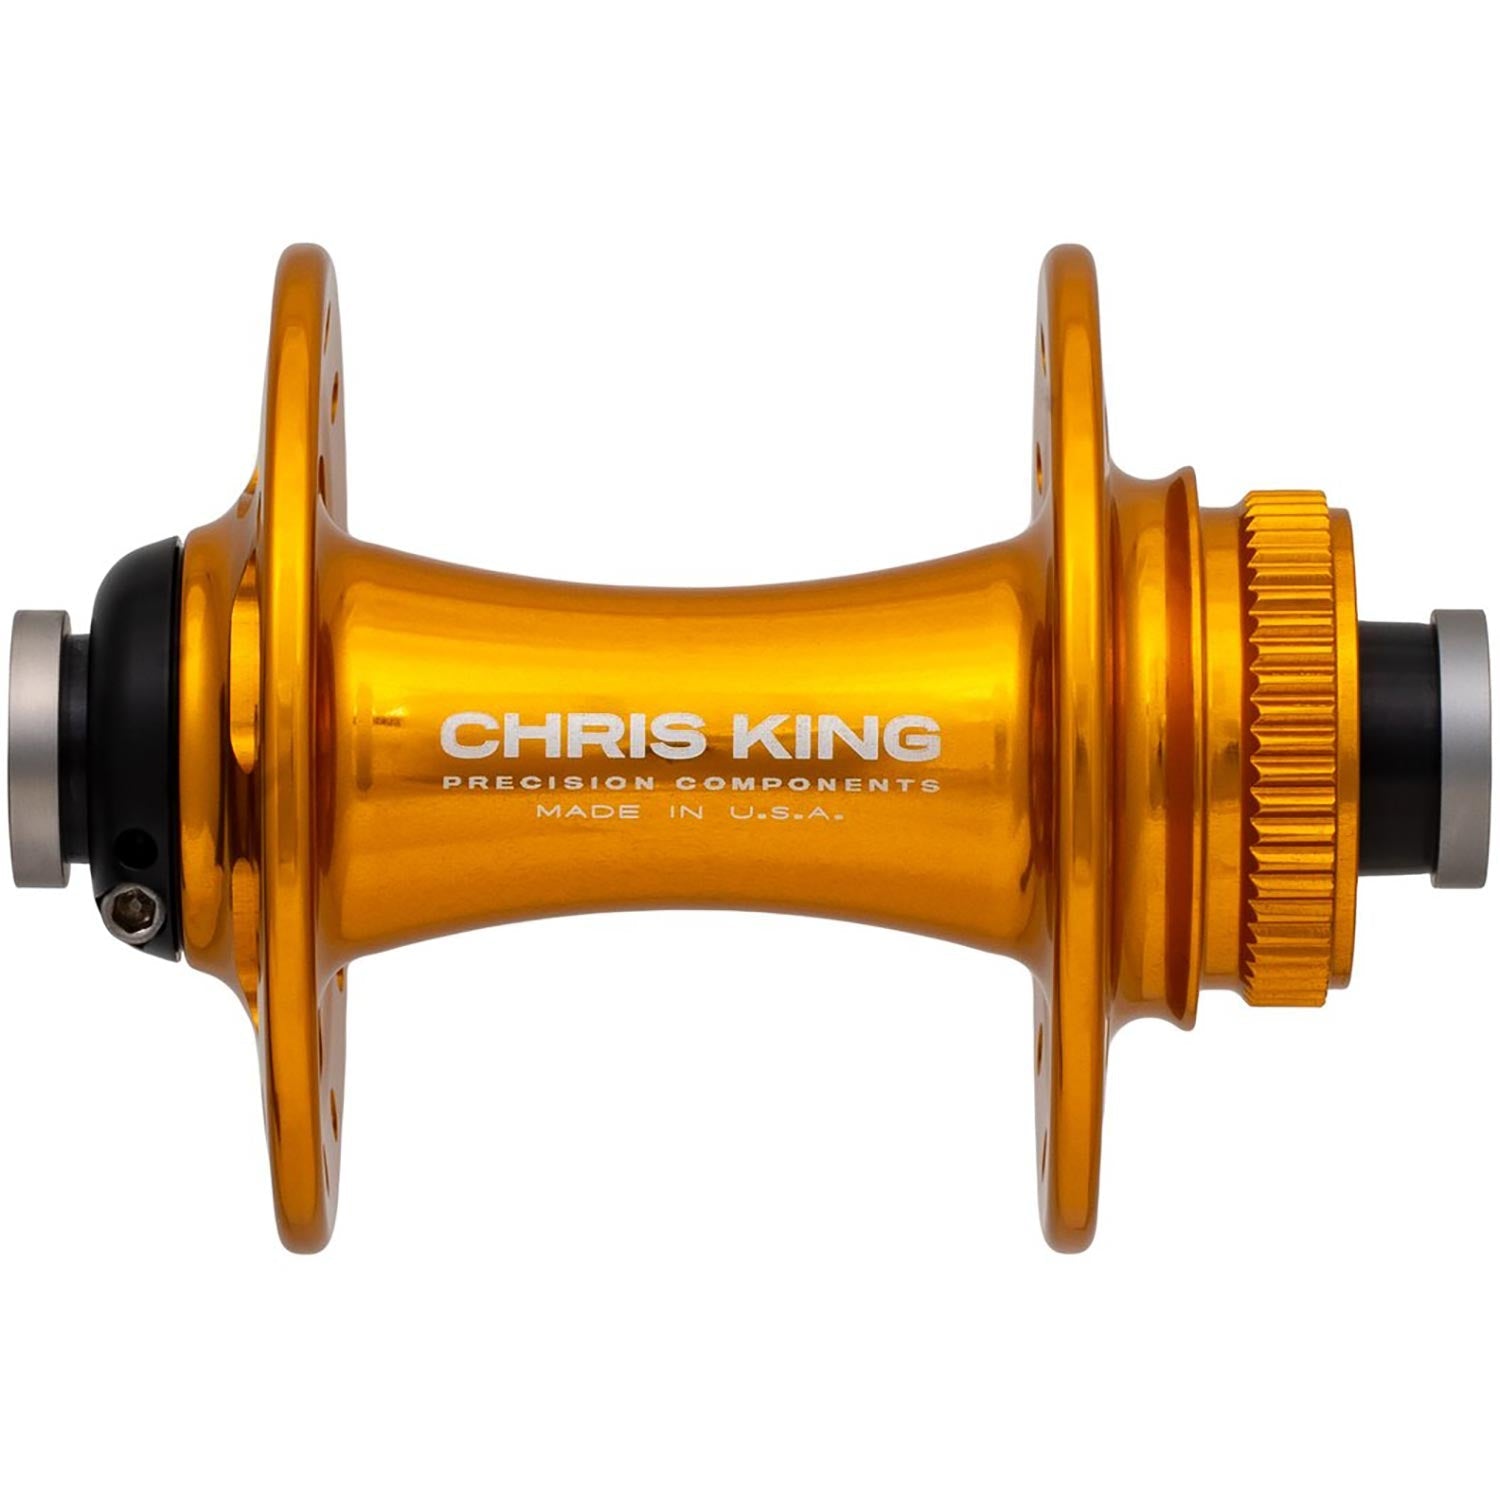 Chris King Road R45D Front Hub - 100x12mm